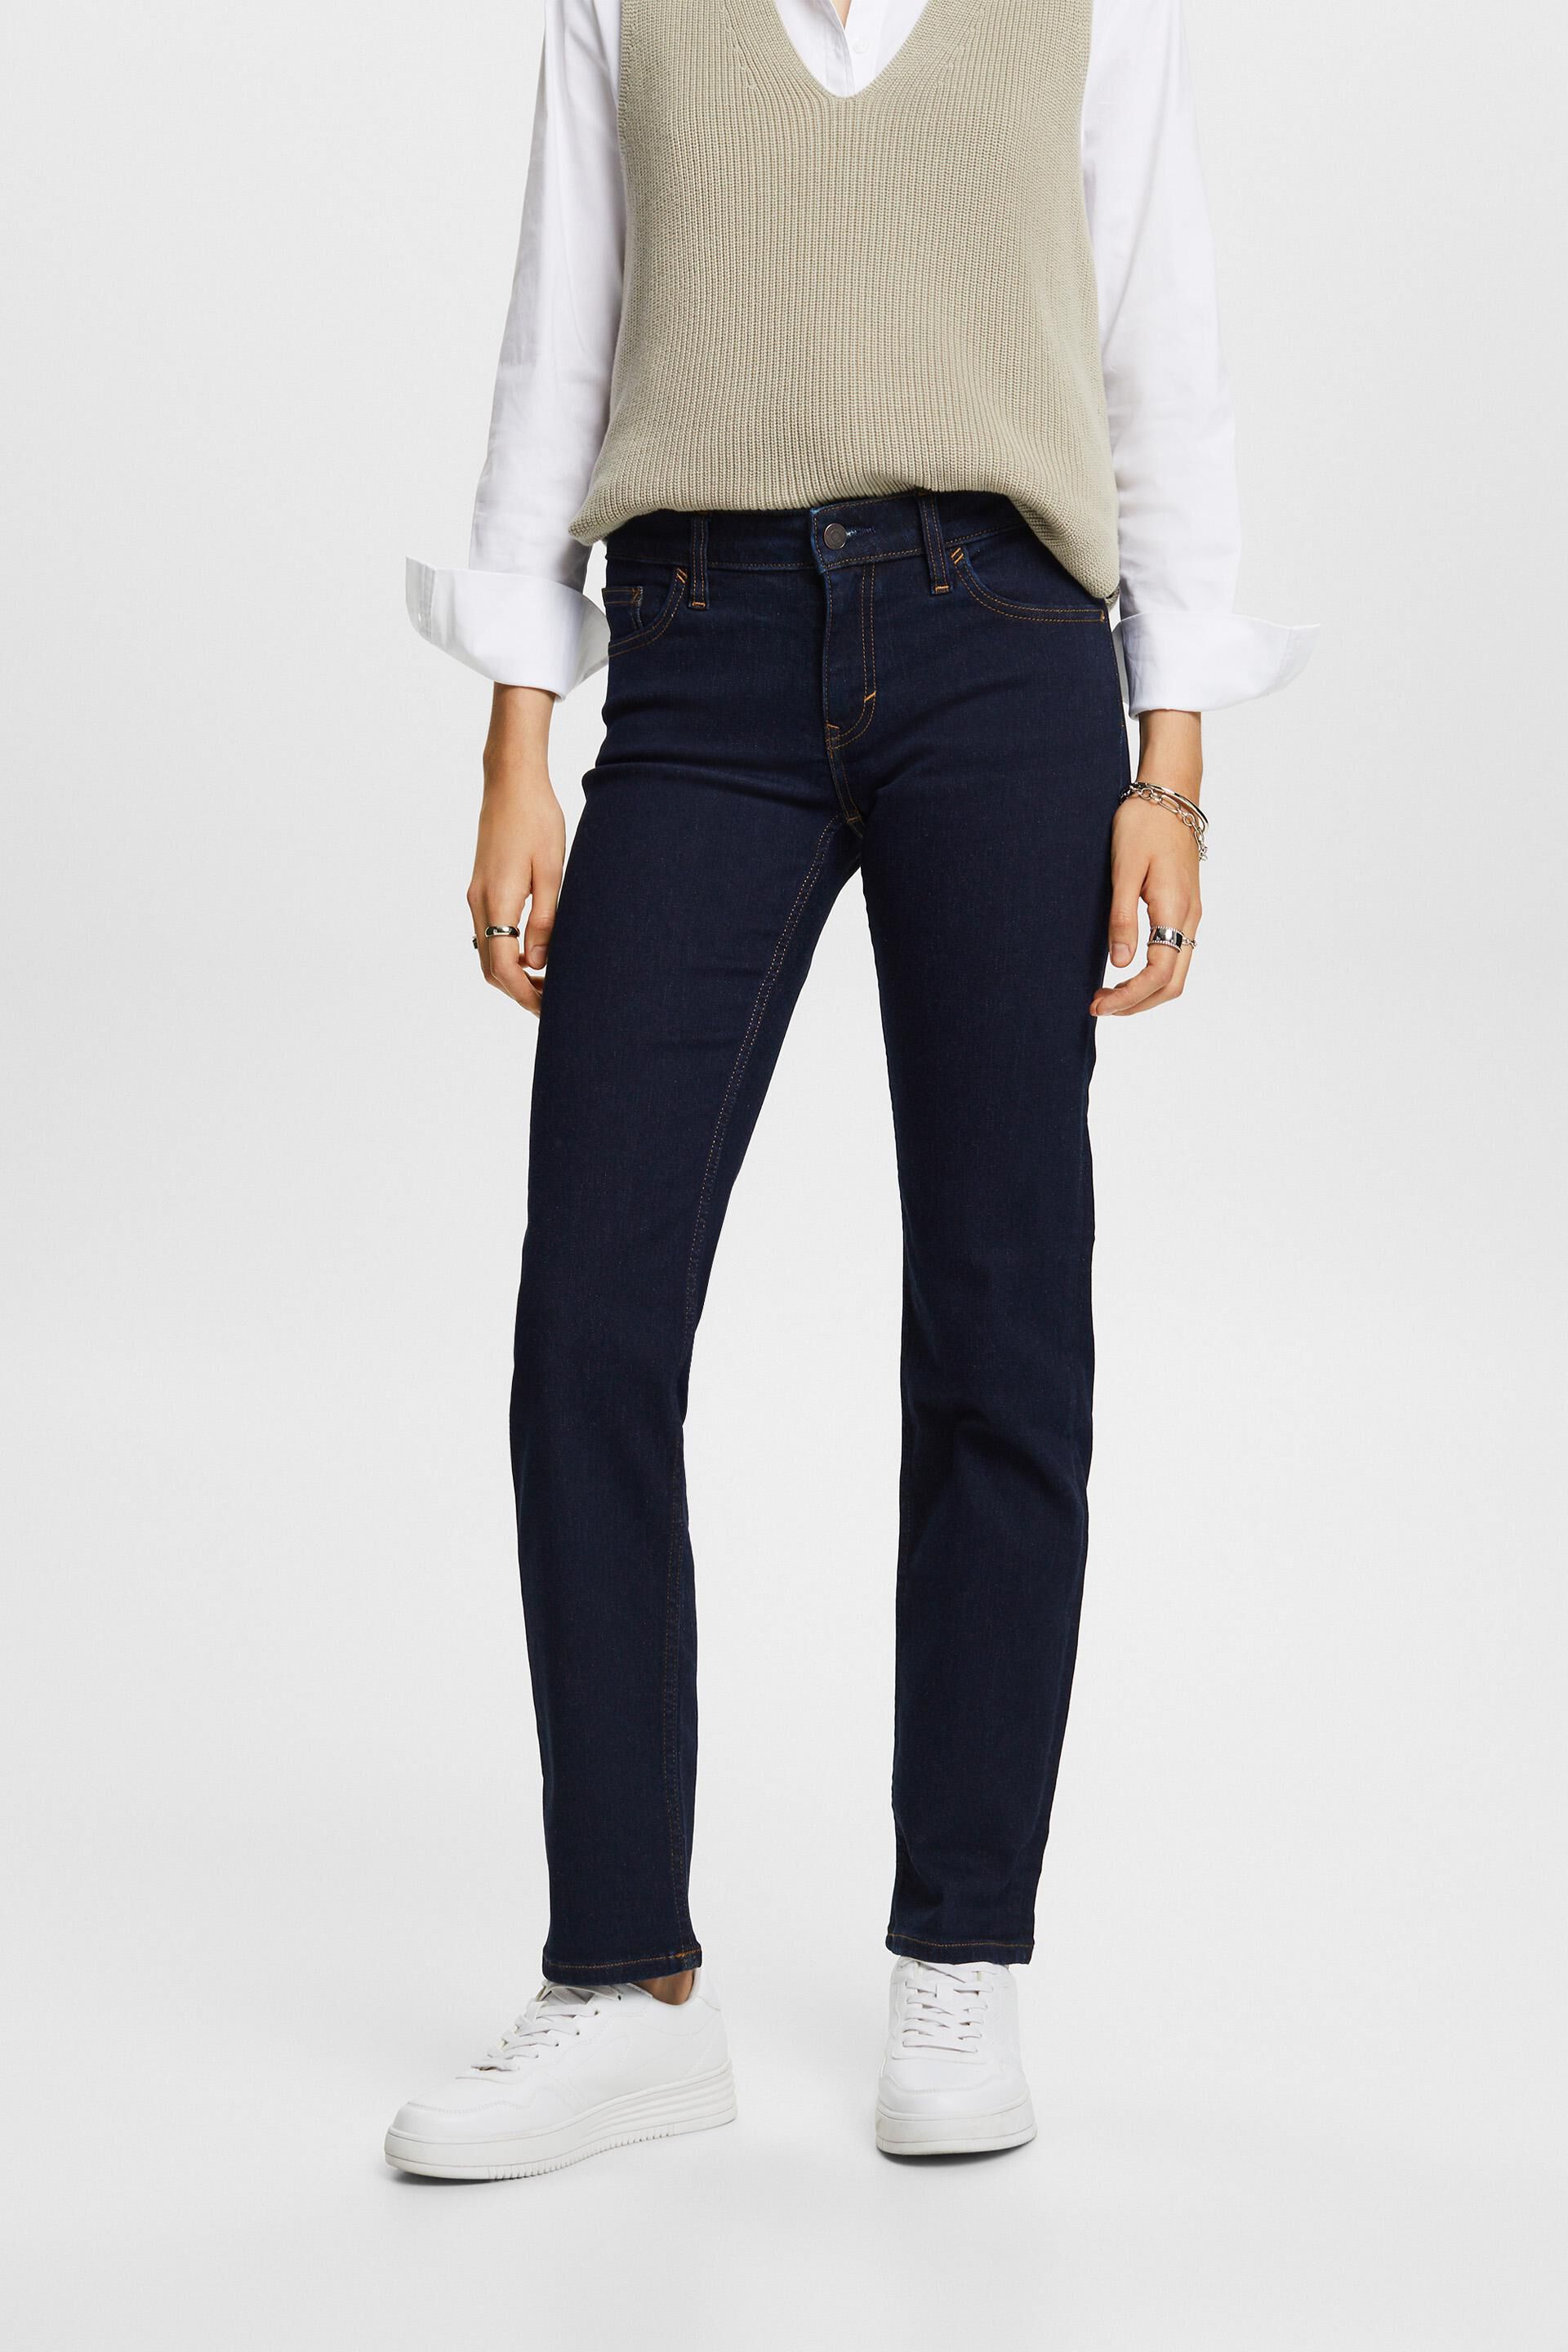 Esprit cotton jeans, stretch Straight blend leg